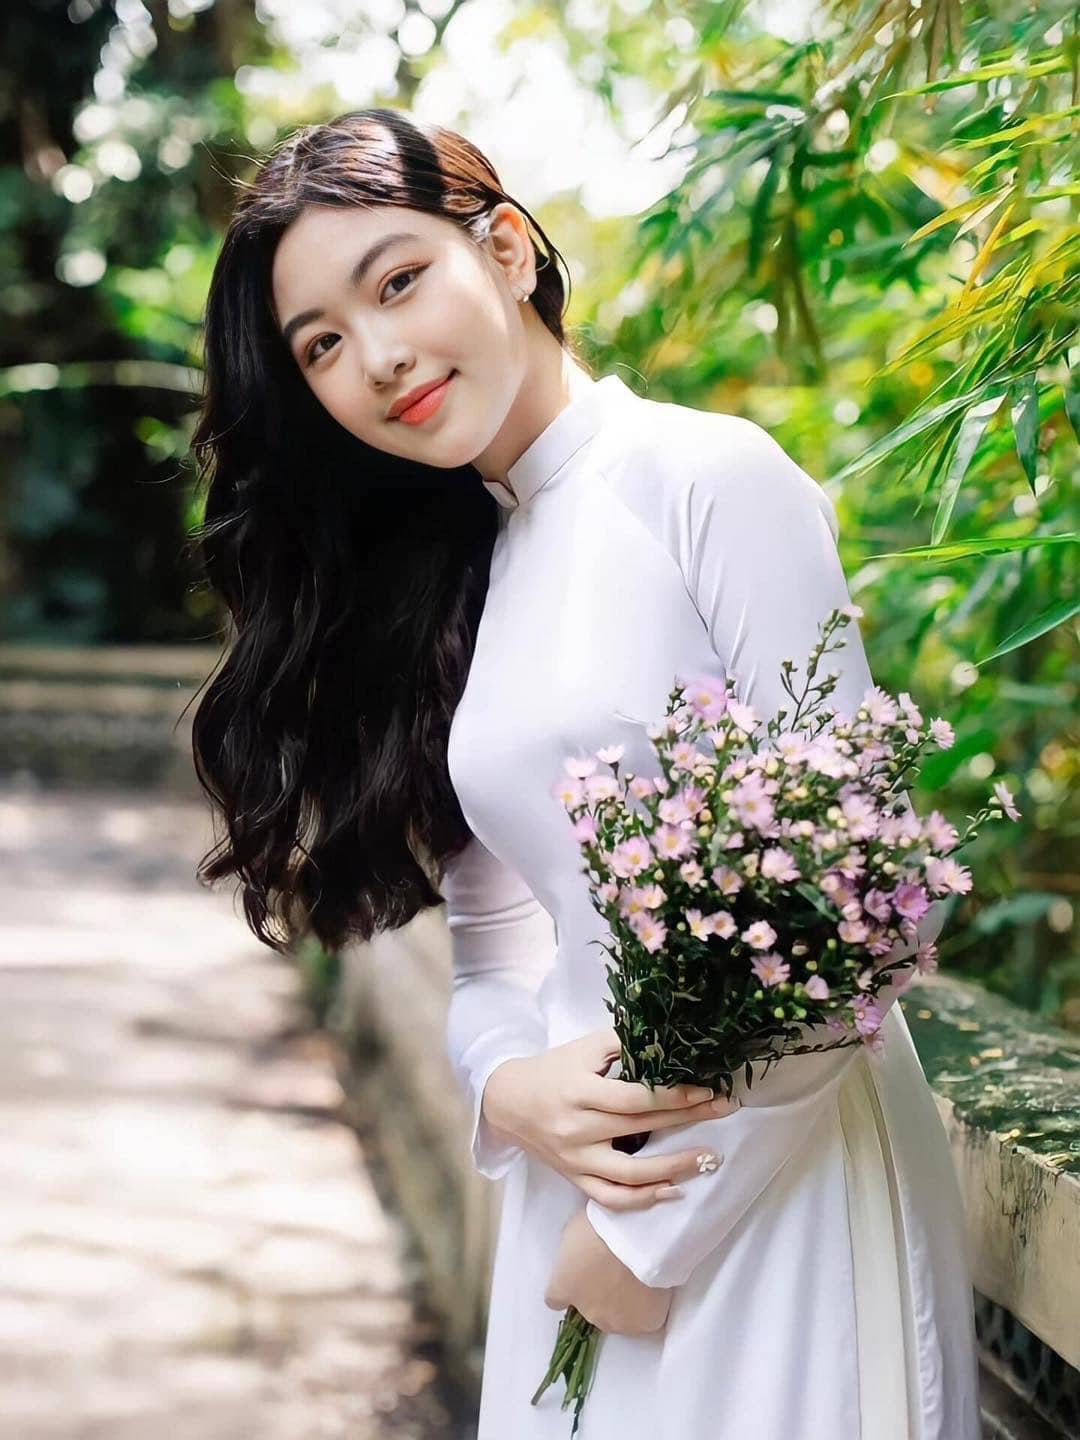 Con gái Quyền Linh lại gây sốt MXH với bộ ảnh ngọt ngào, kỷ niệm lần đầu chụp quảng cáo chuyên nghiệp - Ảnh 12